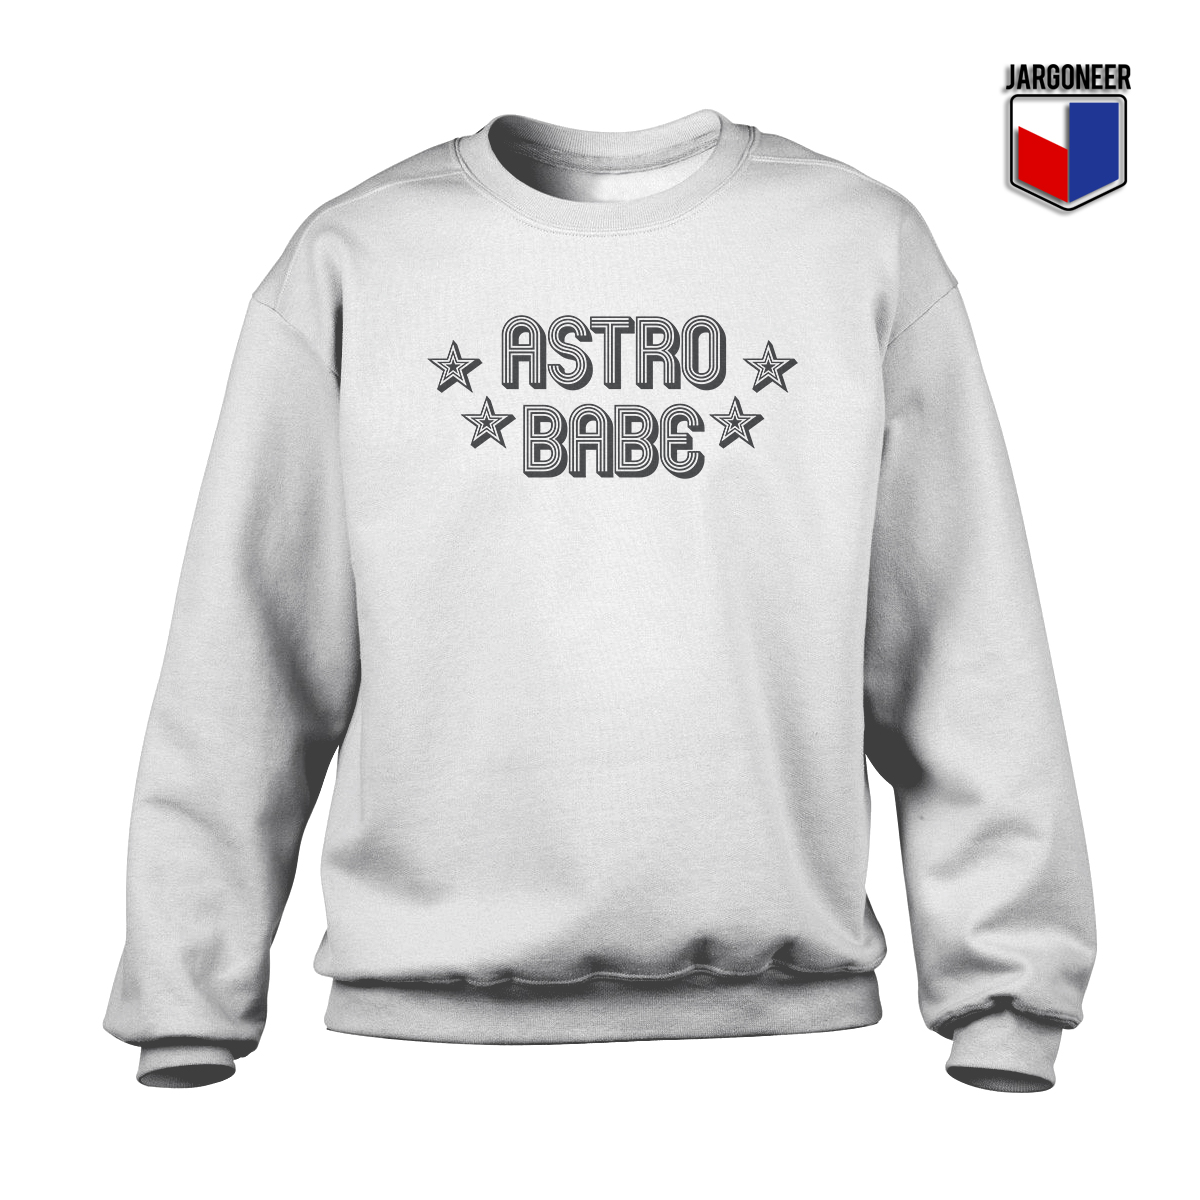 astros crewneck sweatshirt